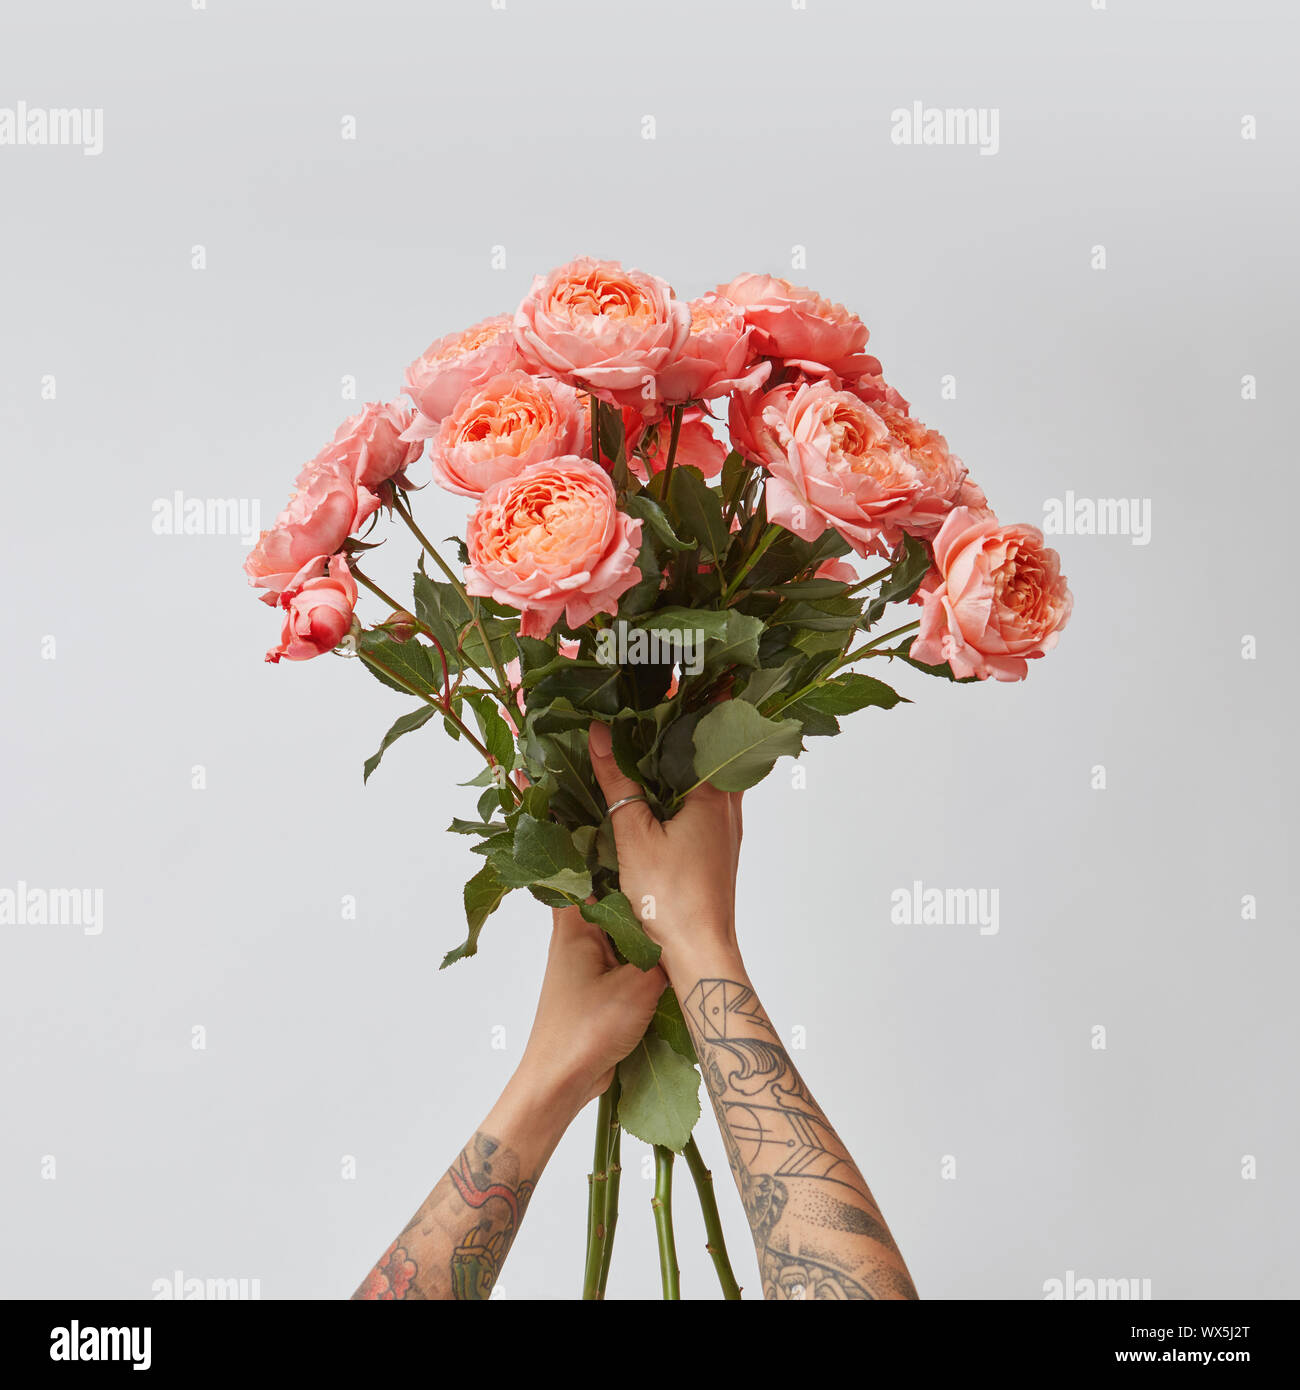 Girl's Hände mit Tattoo halten Sie einen Strauß mit frischen Rosen in einer Farbe des Jahres 2019 Lebende Korallen Pantone auf grauem Hintergrund. Stockfoto